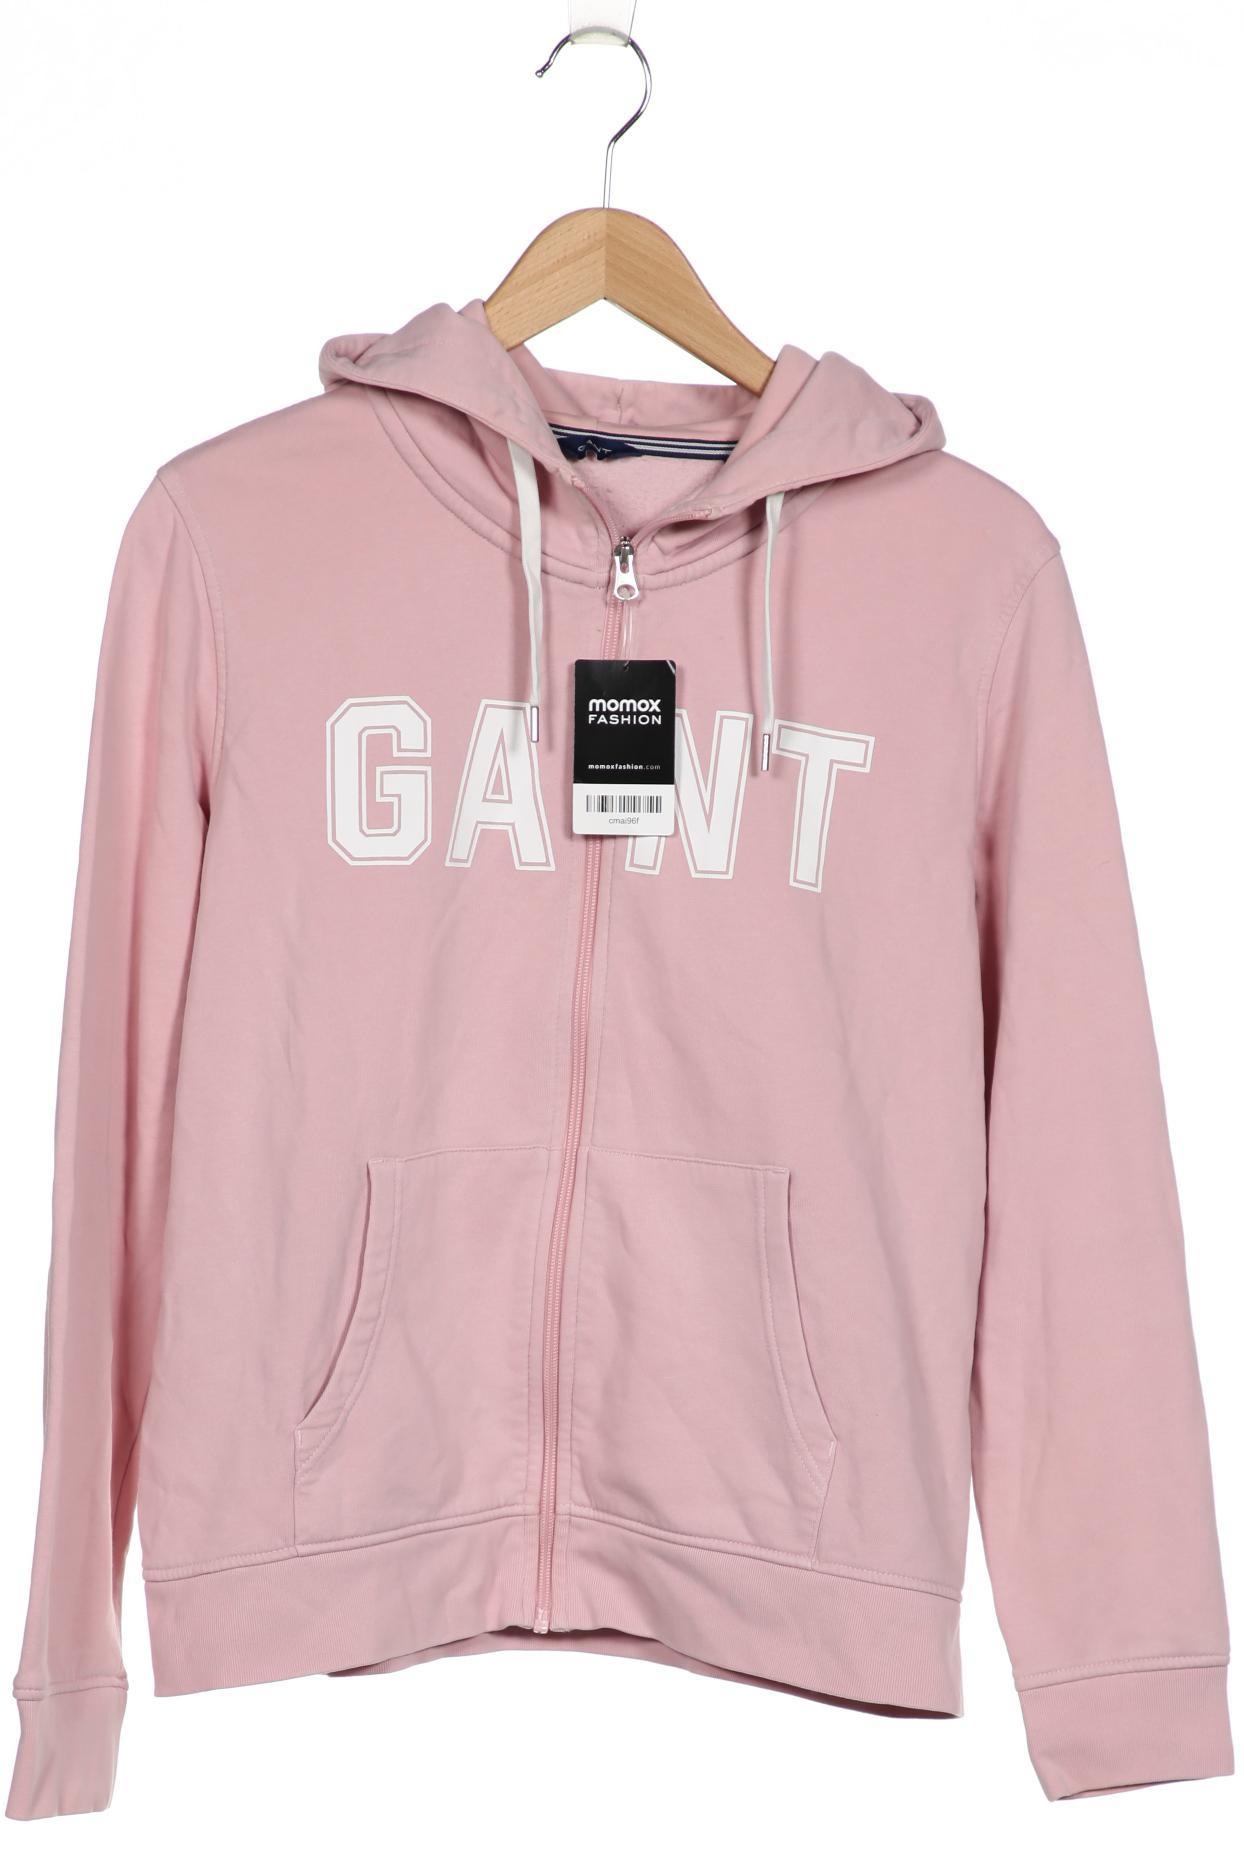 Gant Damen Kapuzenpullover, pink, Gr. 44 von Gant